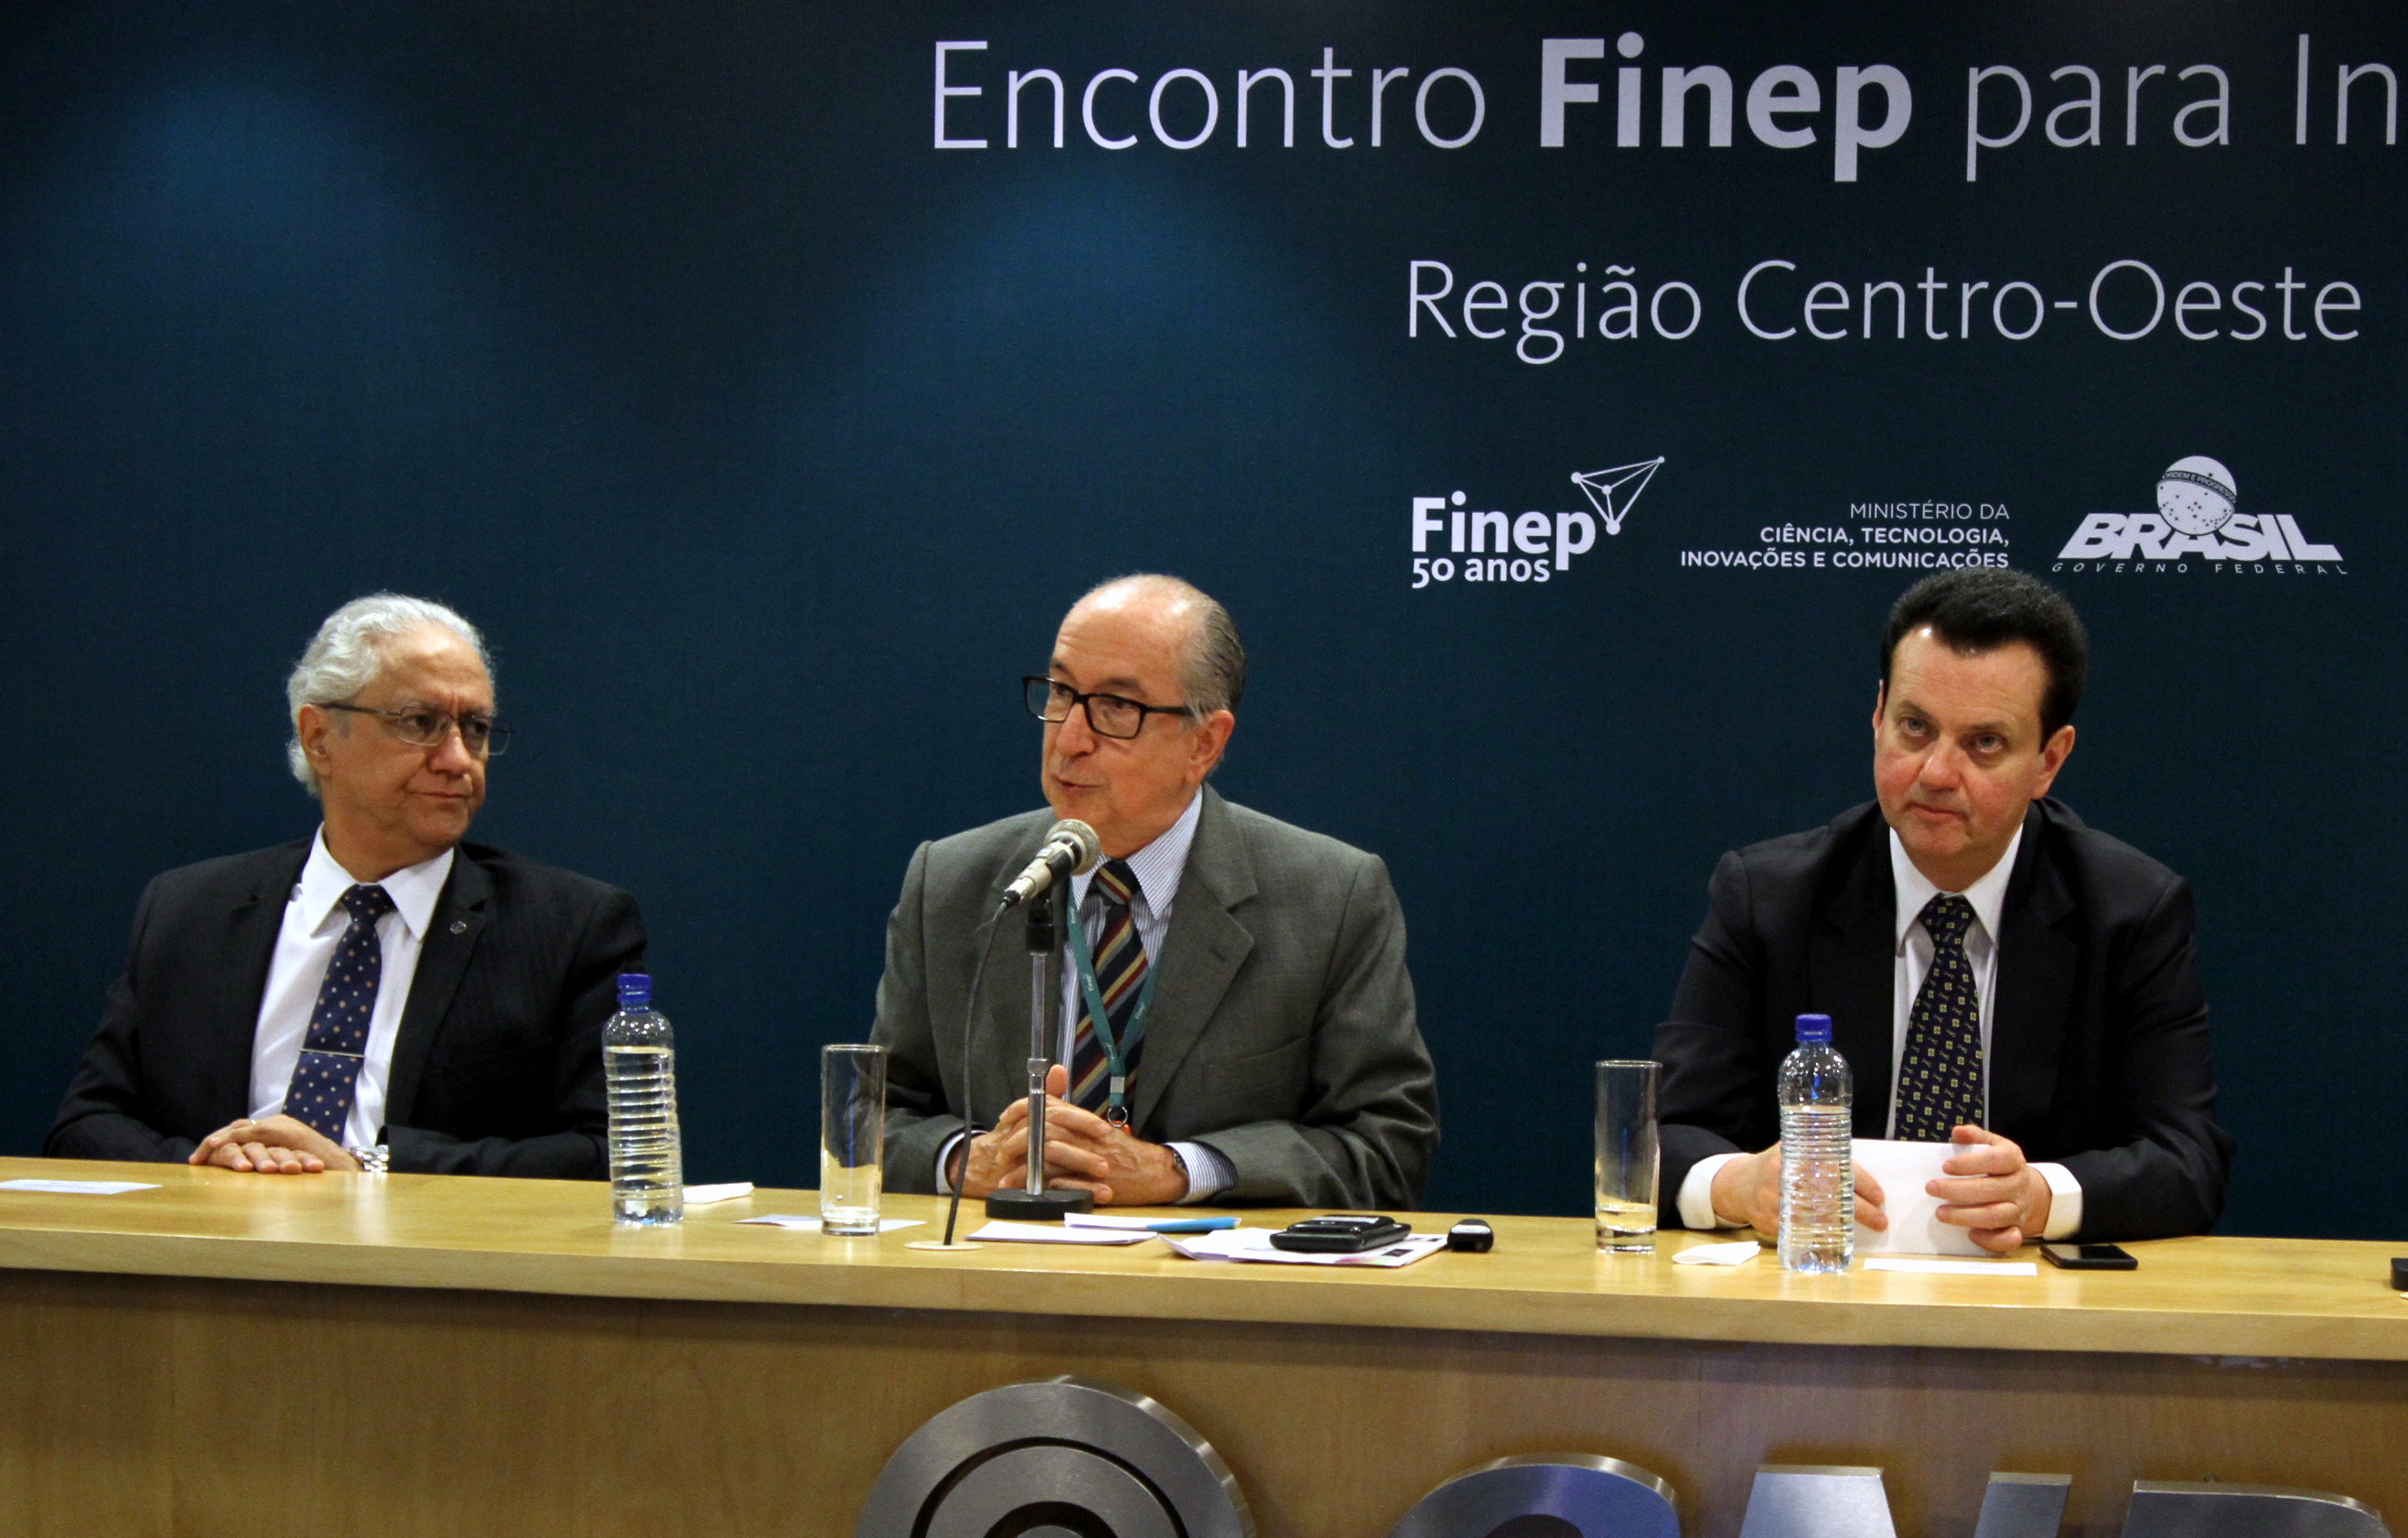  Encontro Finep para Inovação - Região Centro-Oeste - Foto Marcelo Gondim